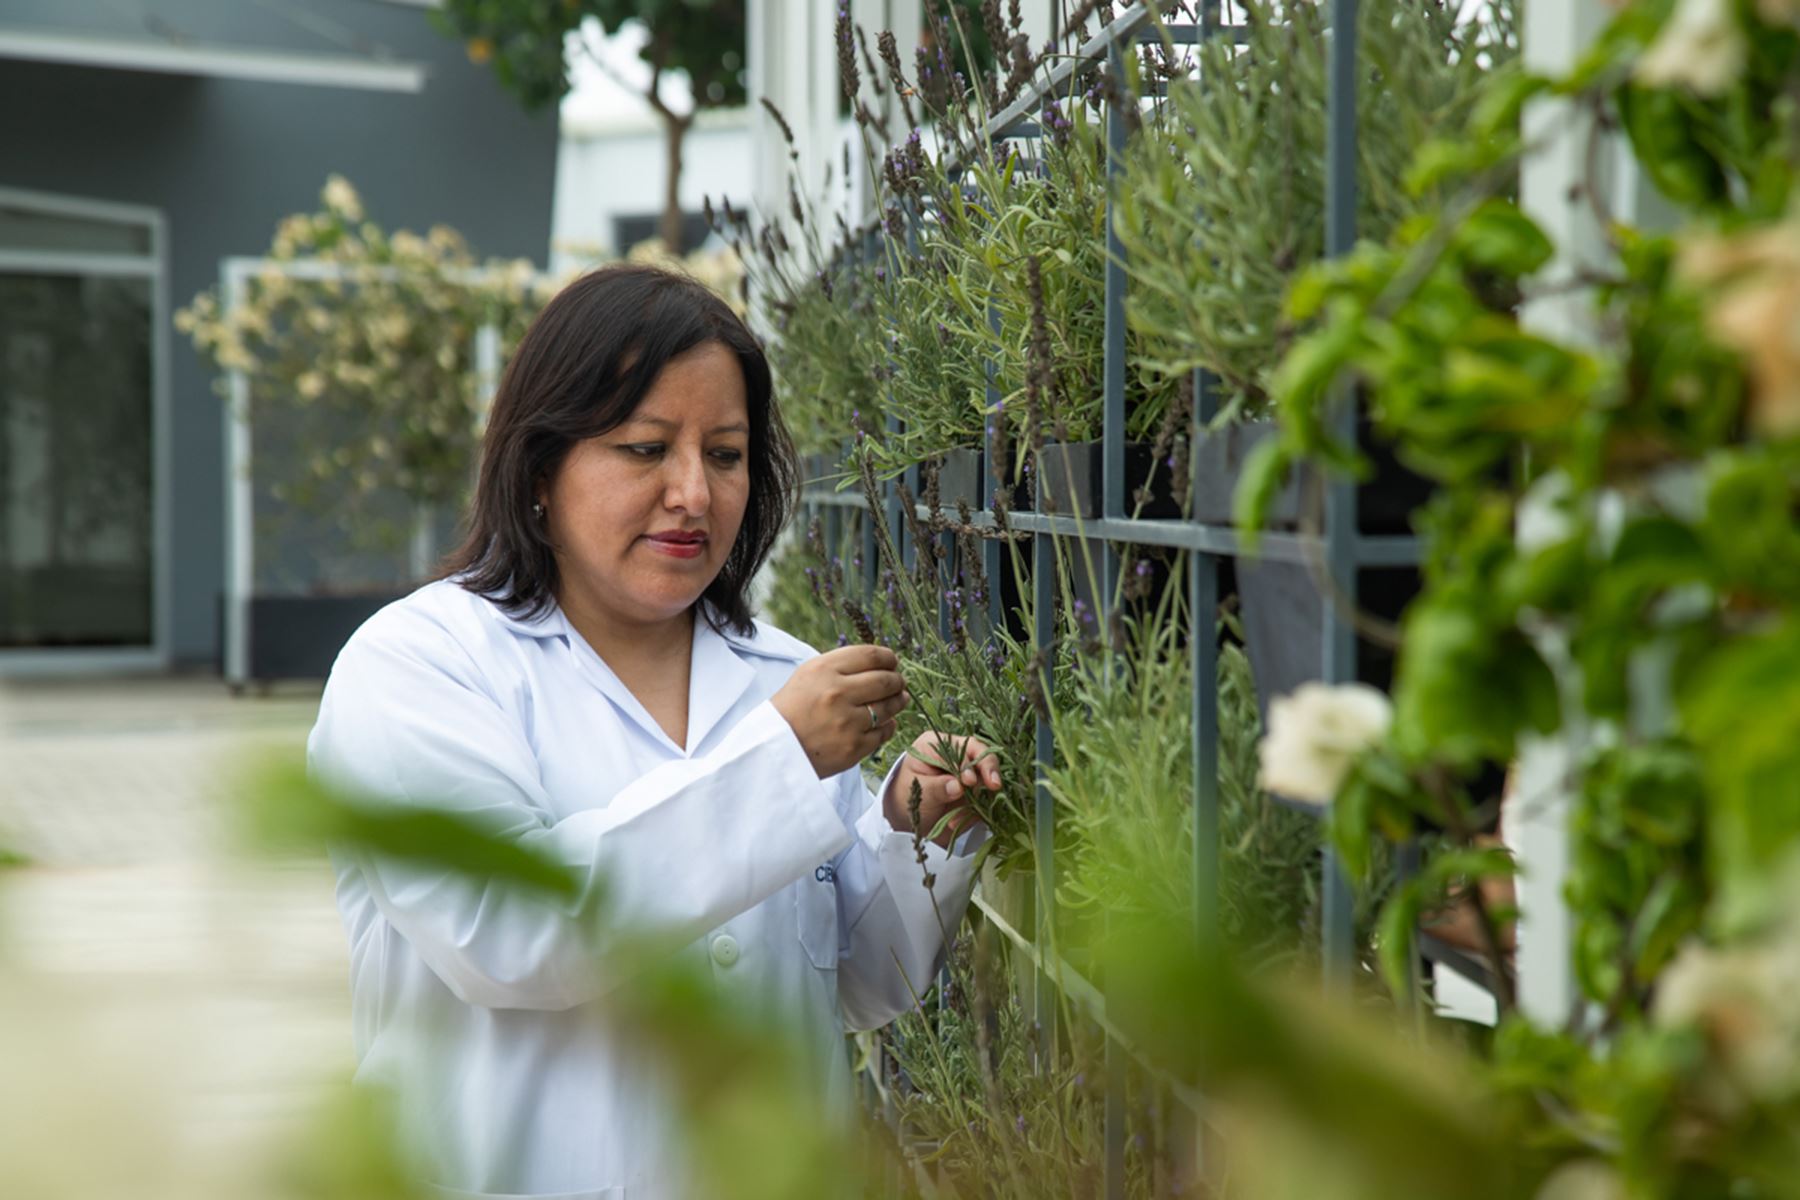 La bióloga peruana Susan Medina Canzi obtuvo su doctorado en 2017 en España luchando contra las complicaciones causadas por el lupus, y regresó al Perú para continuar su labor como investigadora científica. Foto: UCSUR